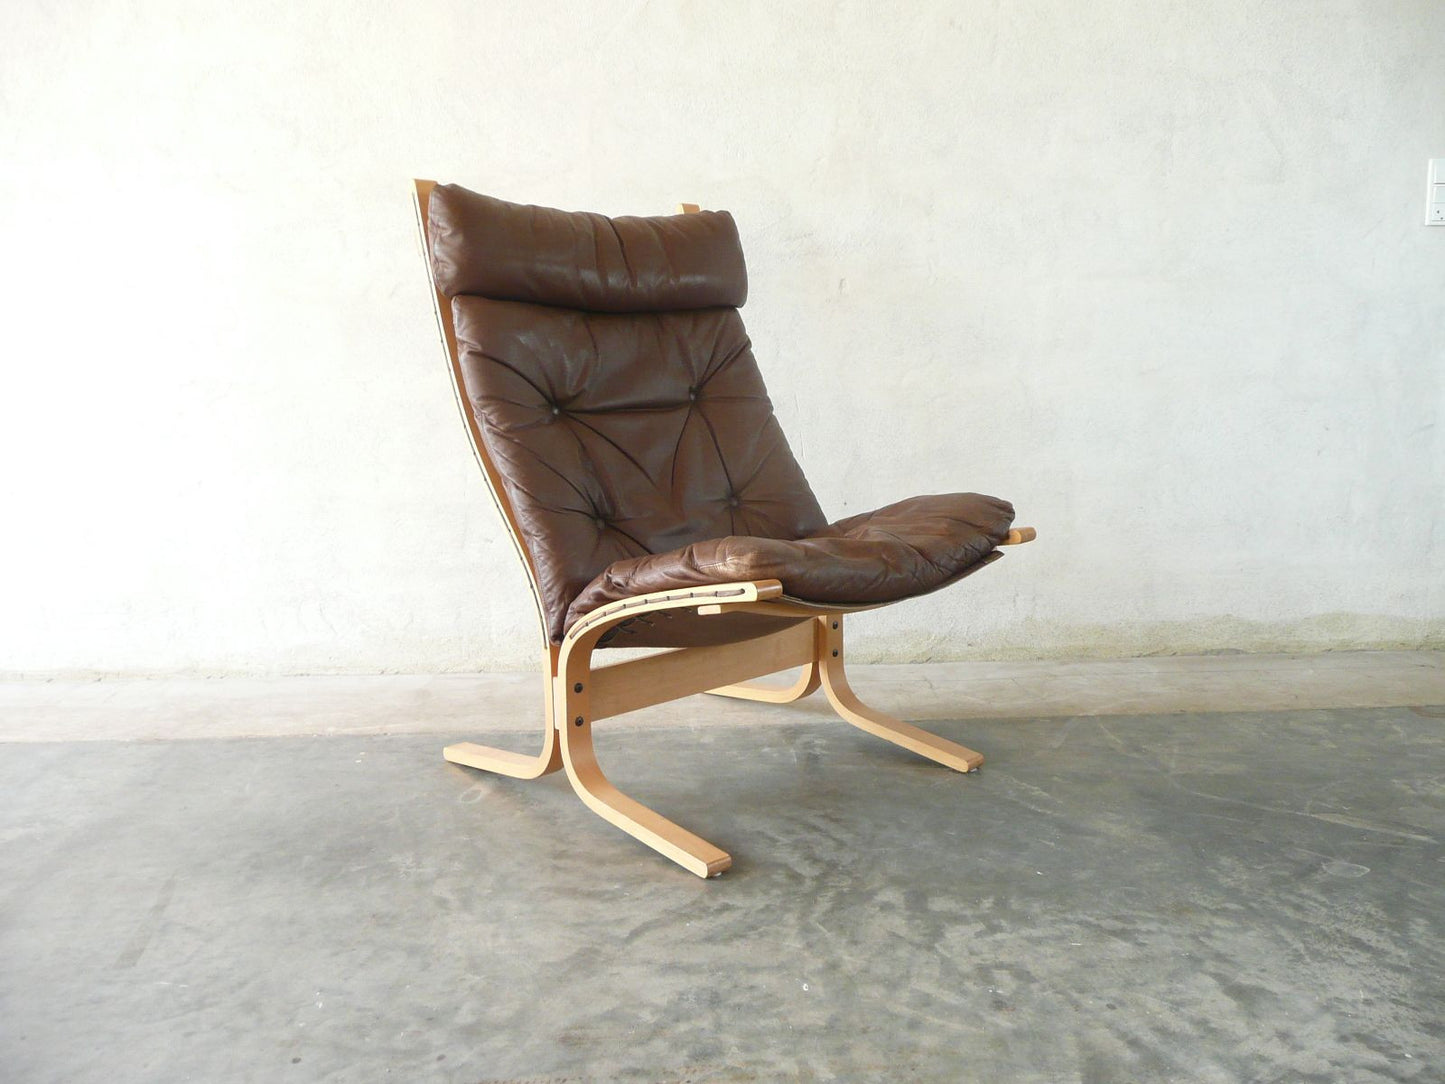 Siesta lounge chair by Westnofa